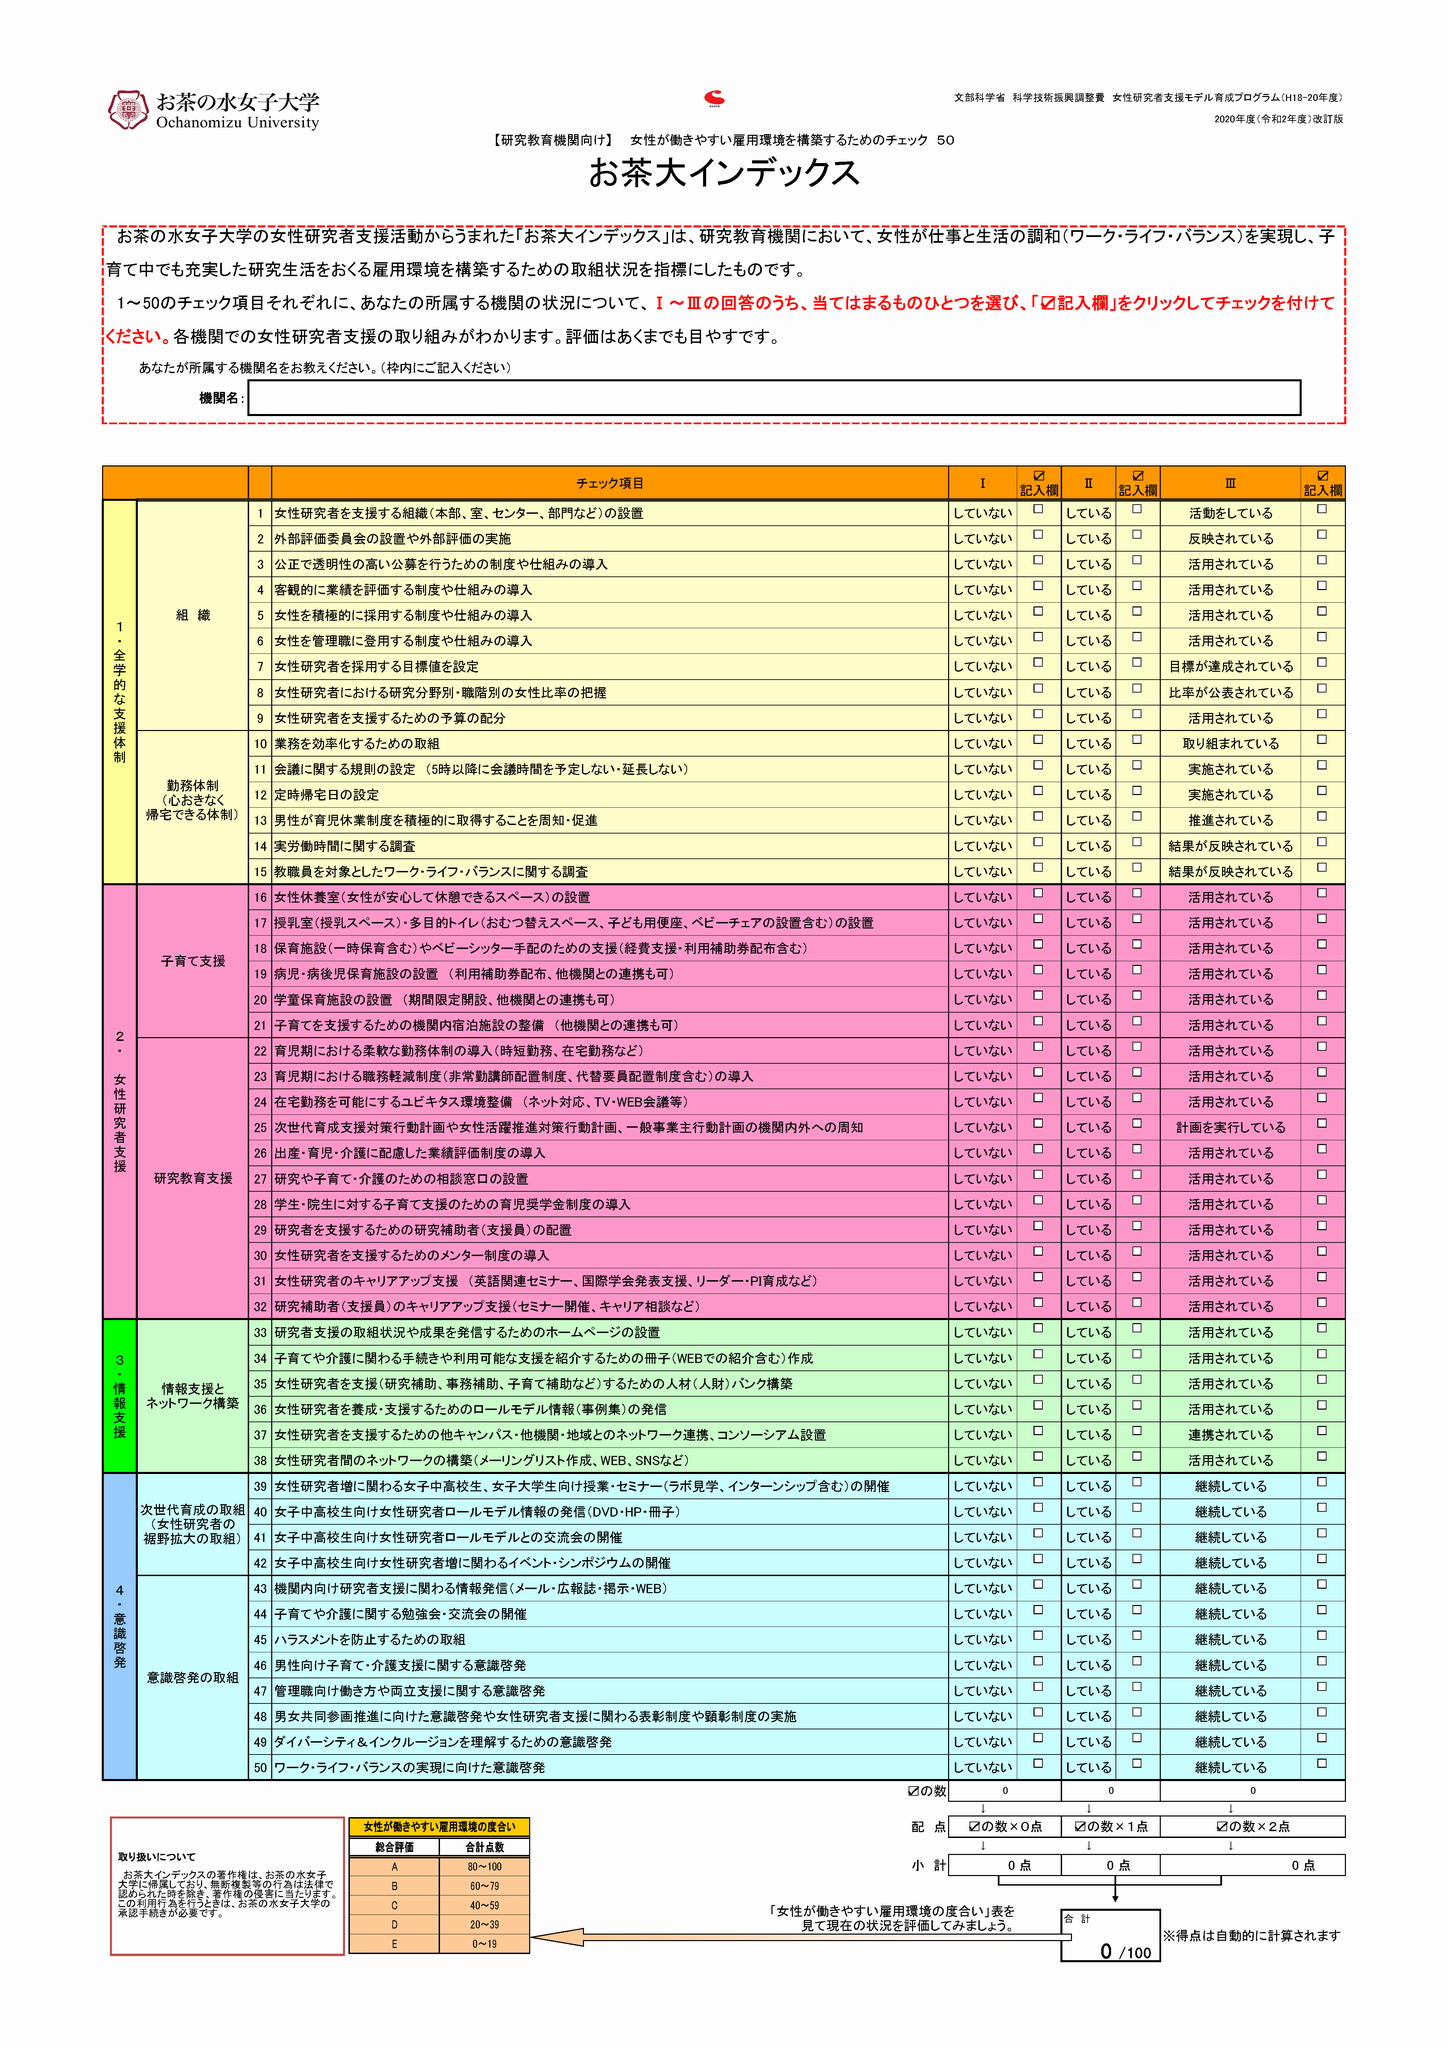 お茶大インデックス（日本語版）PDF